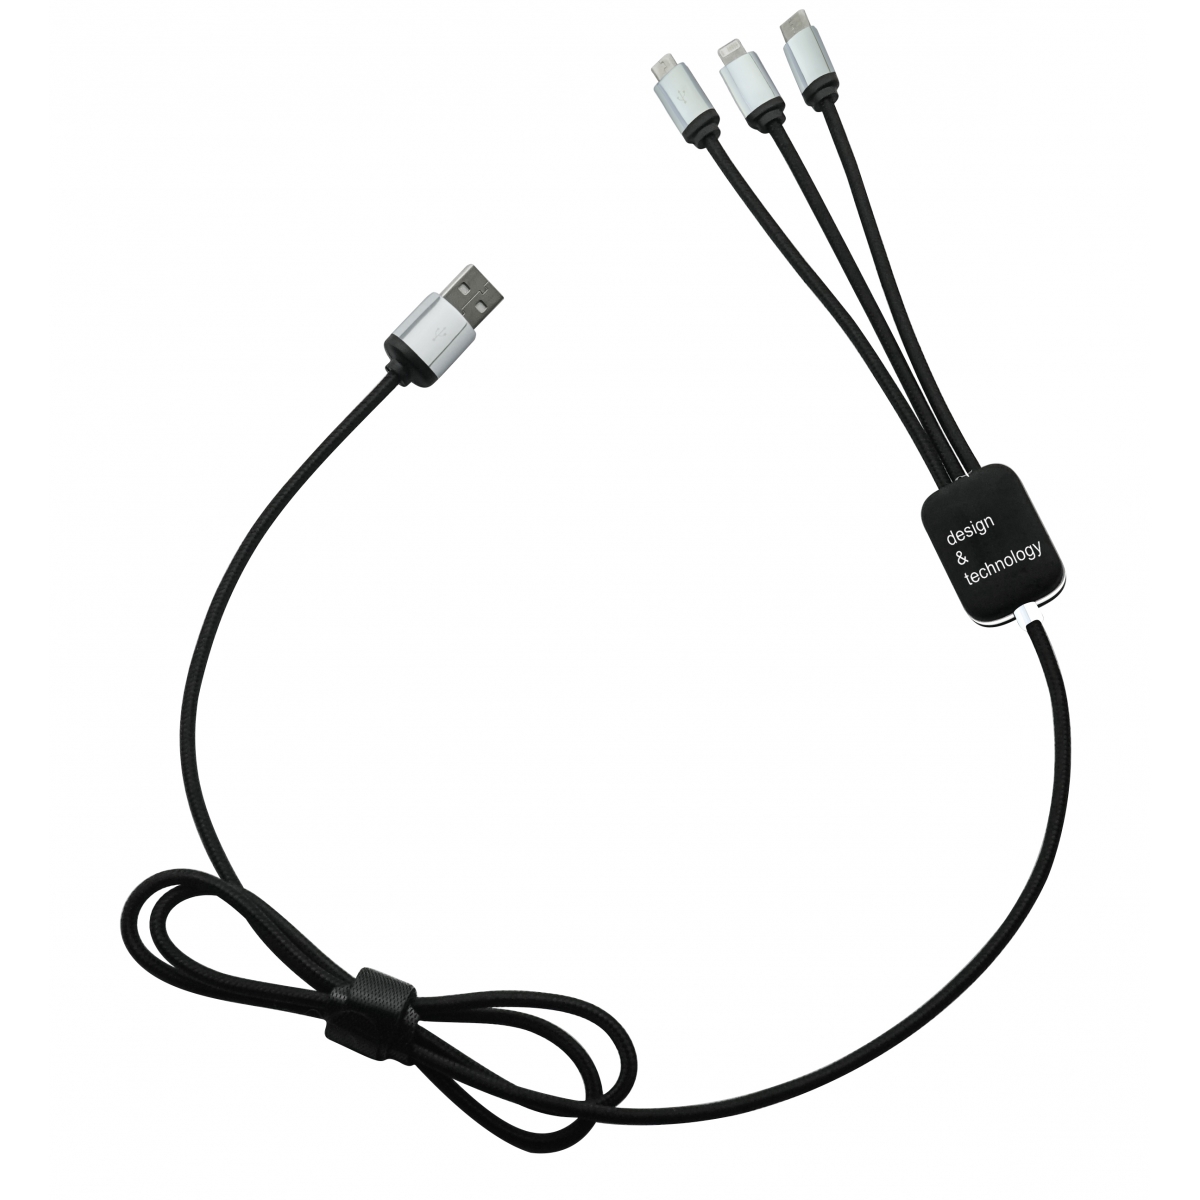 C17 - Câble éco easy to use